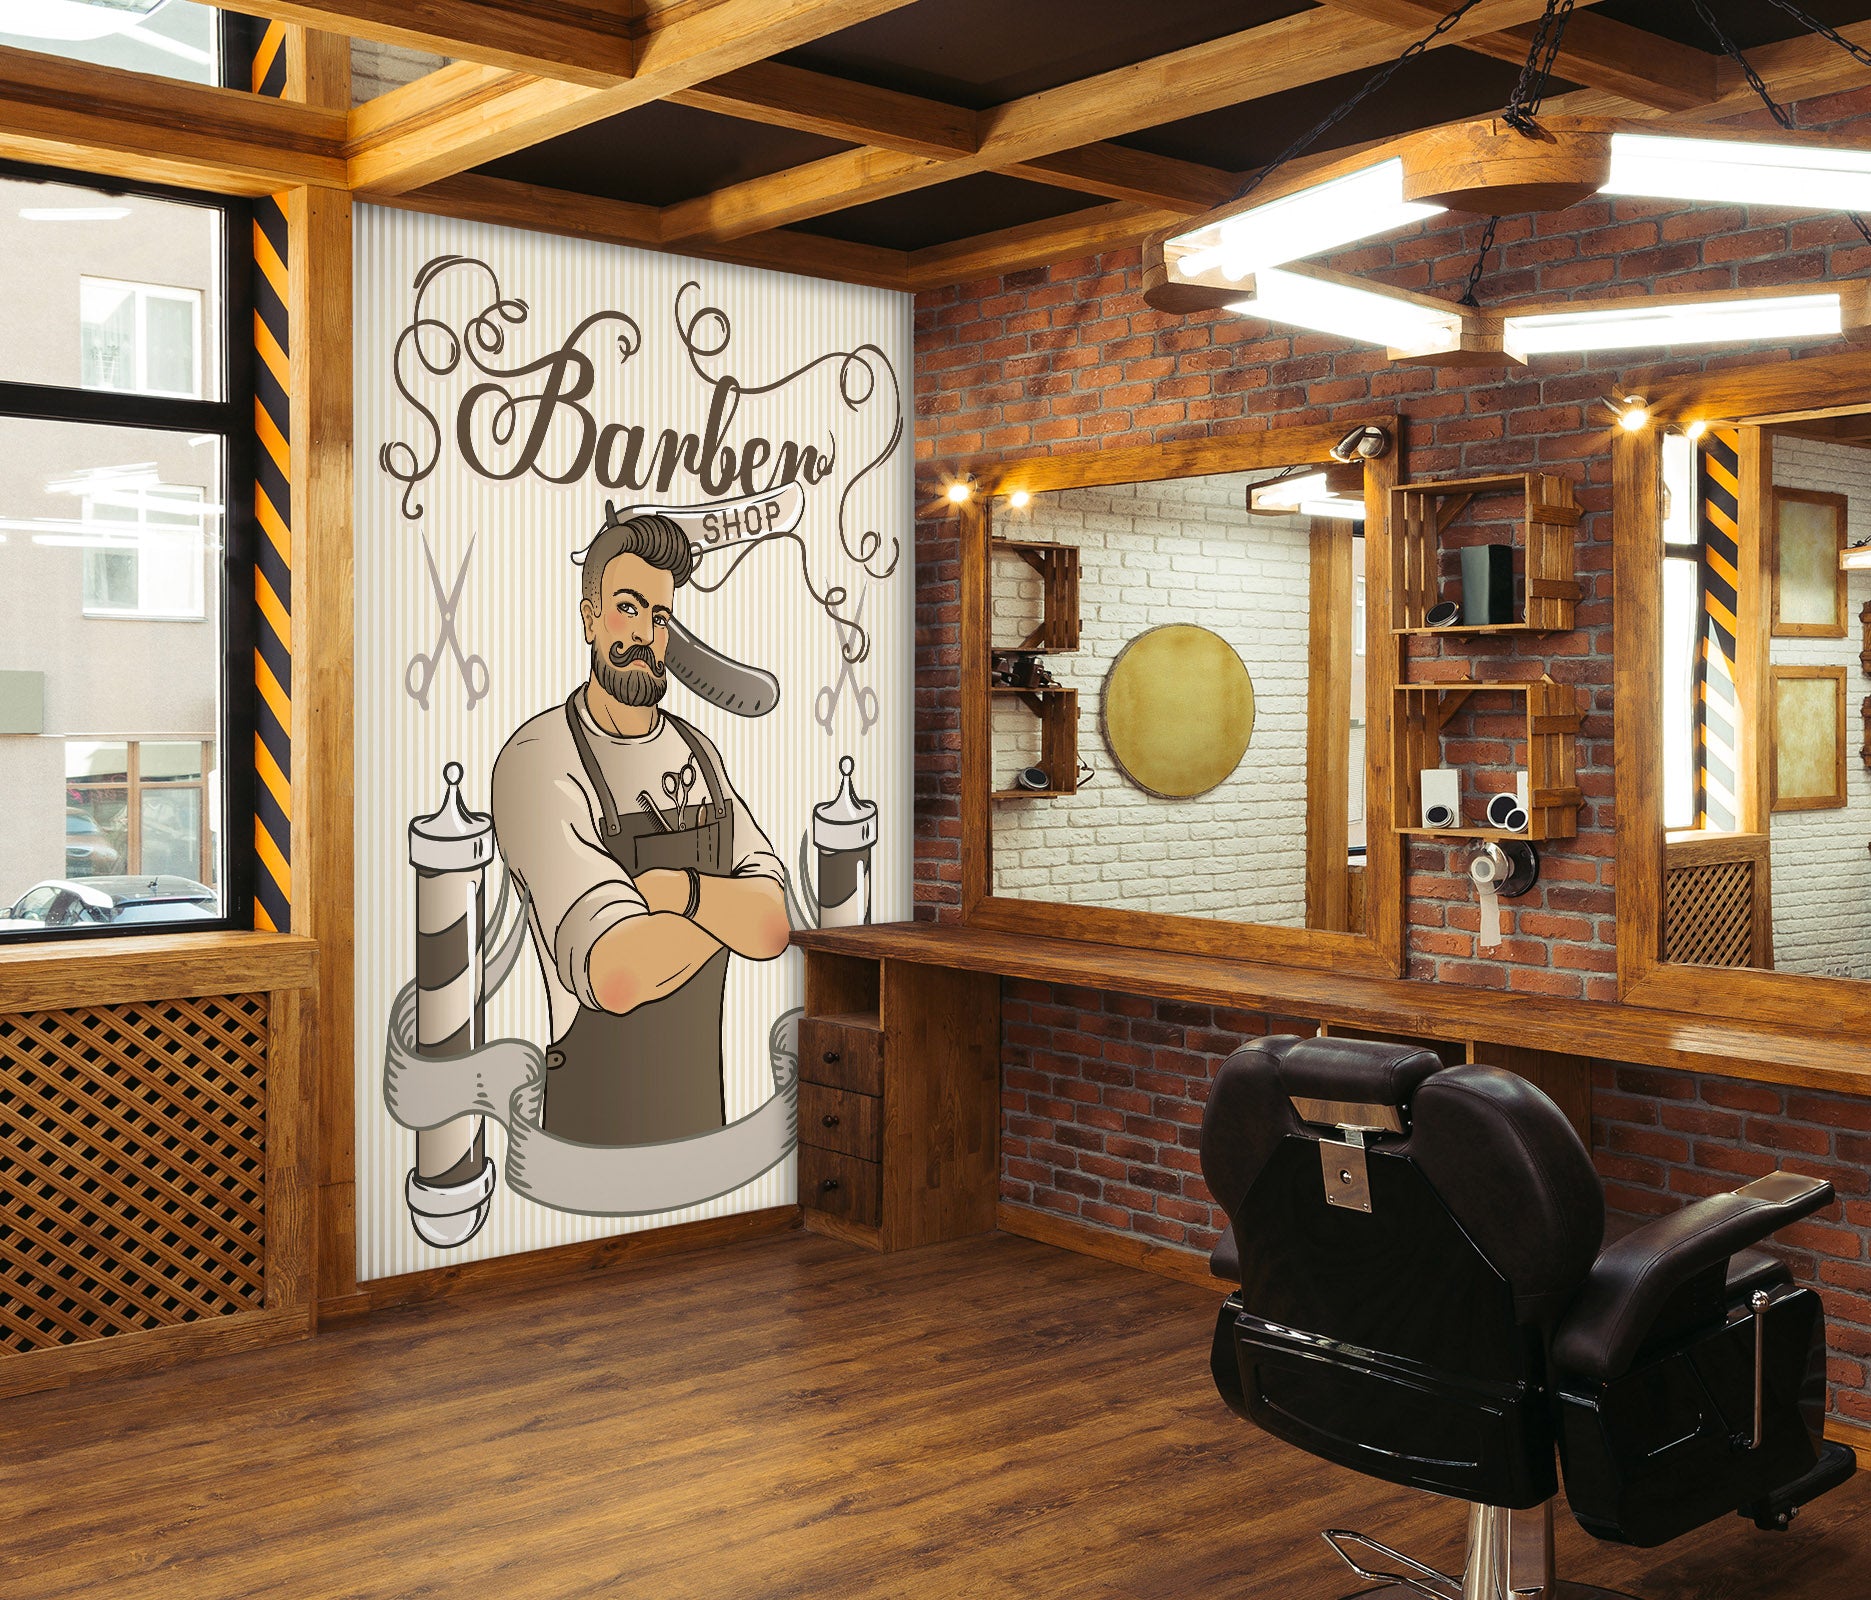 3D Barber 115209 Barber Shop Wall Murals